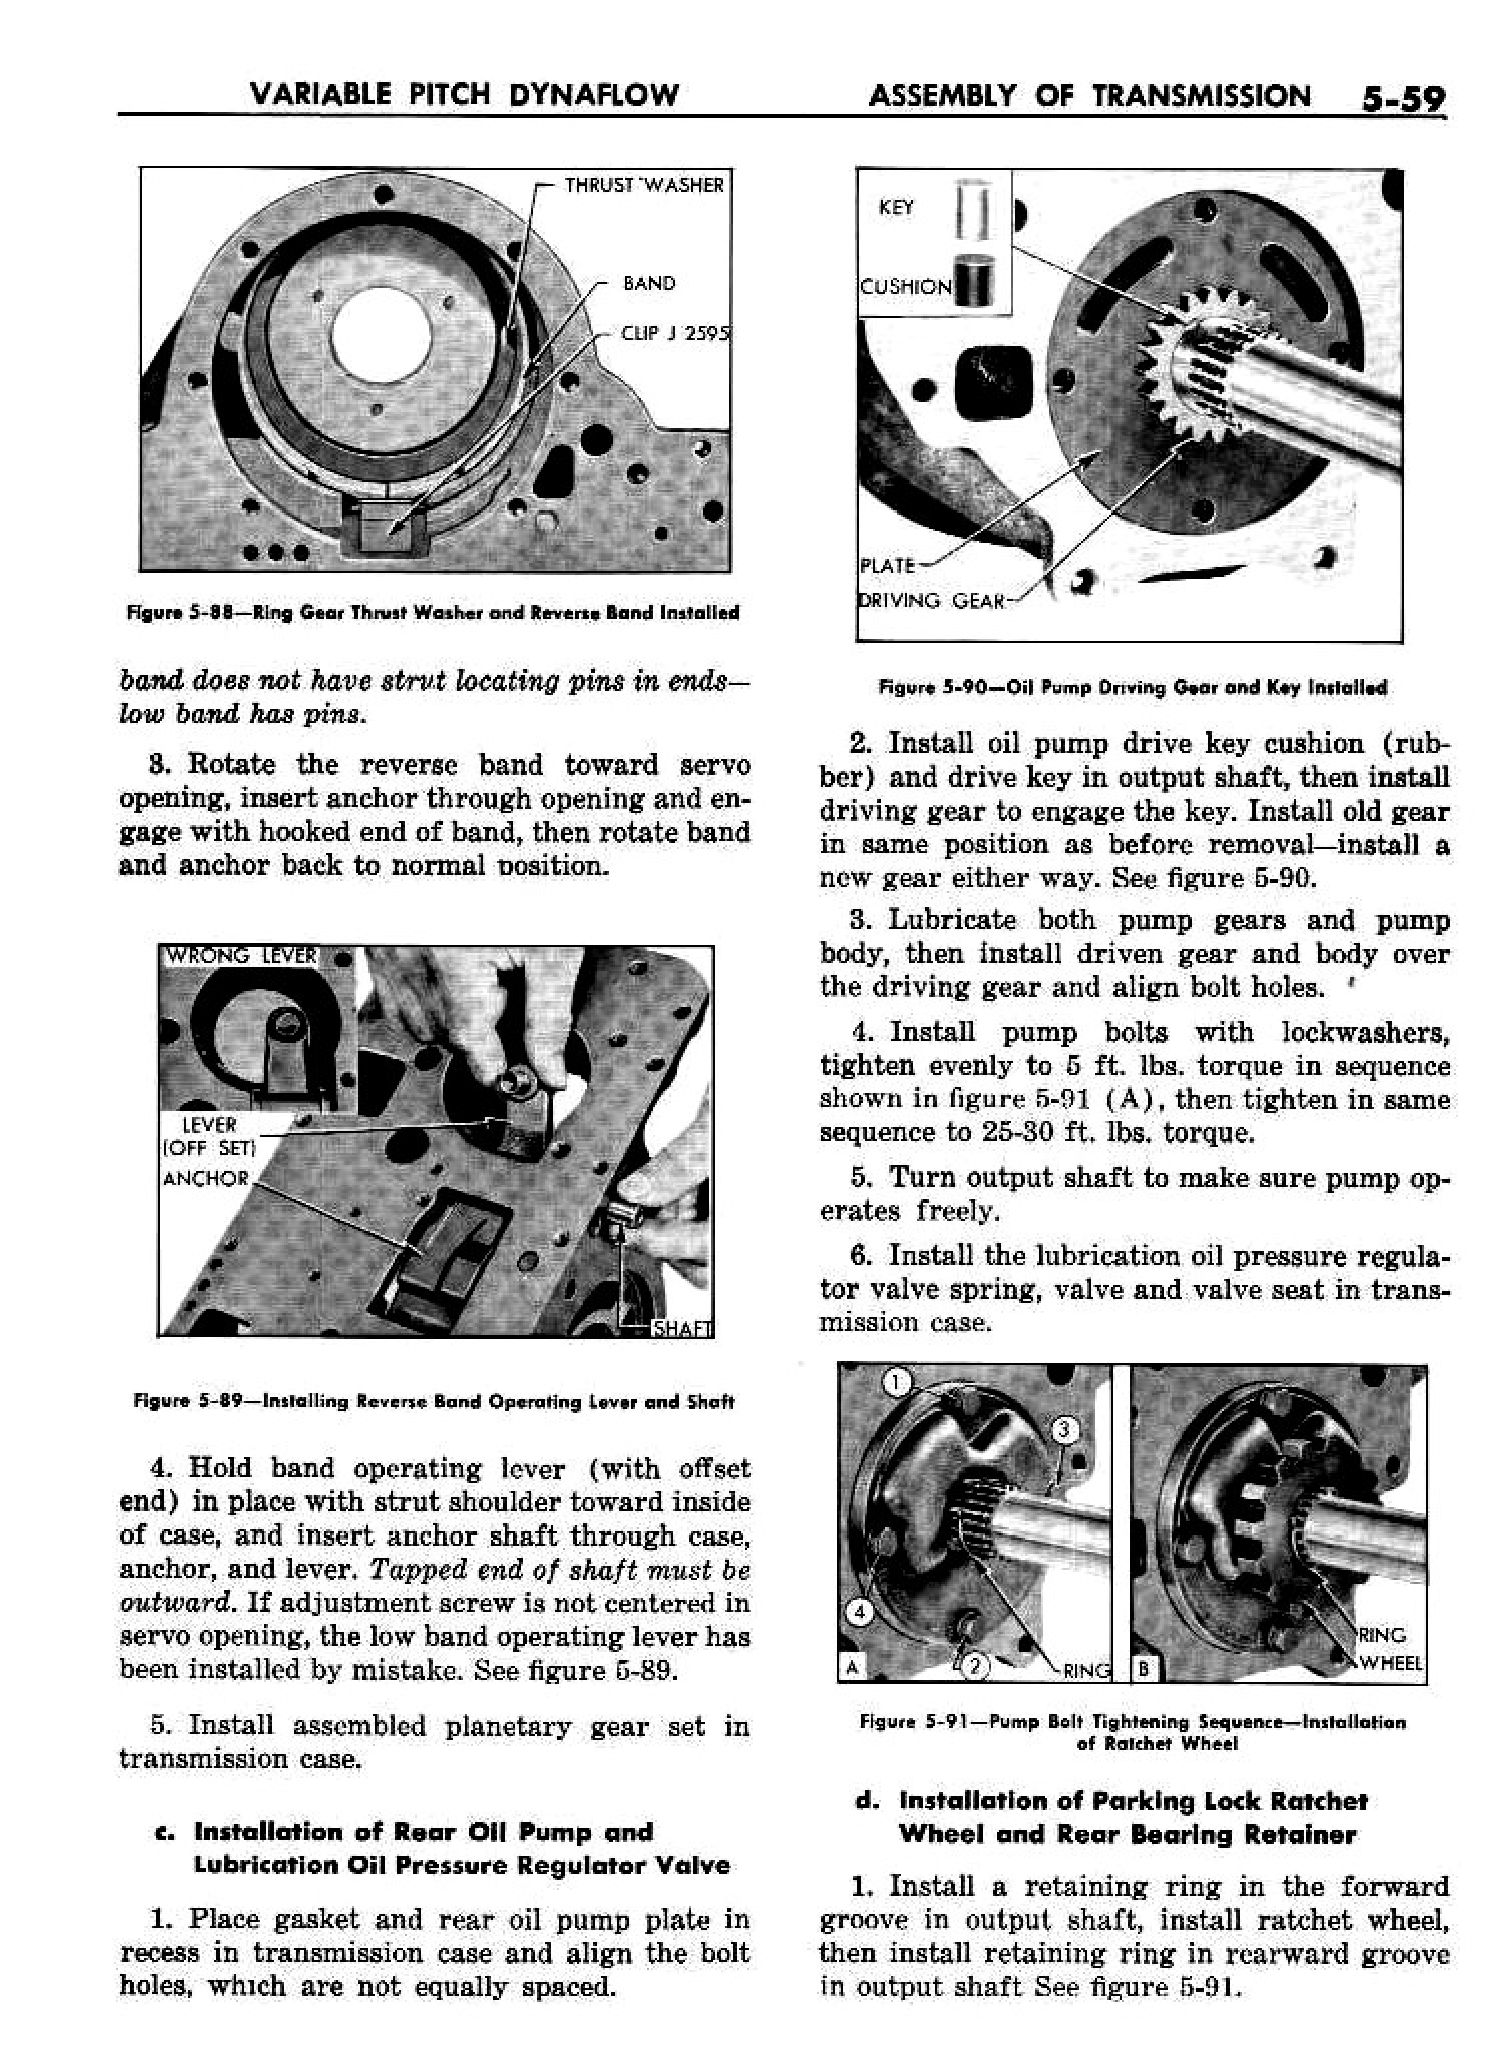 n_06 1958 Buick Shop Manual - Dynaflow_59.jpg